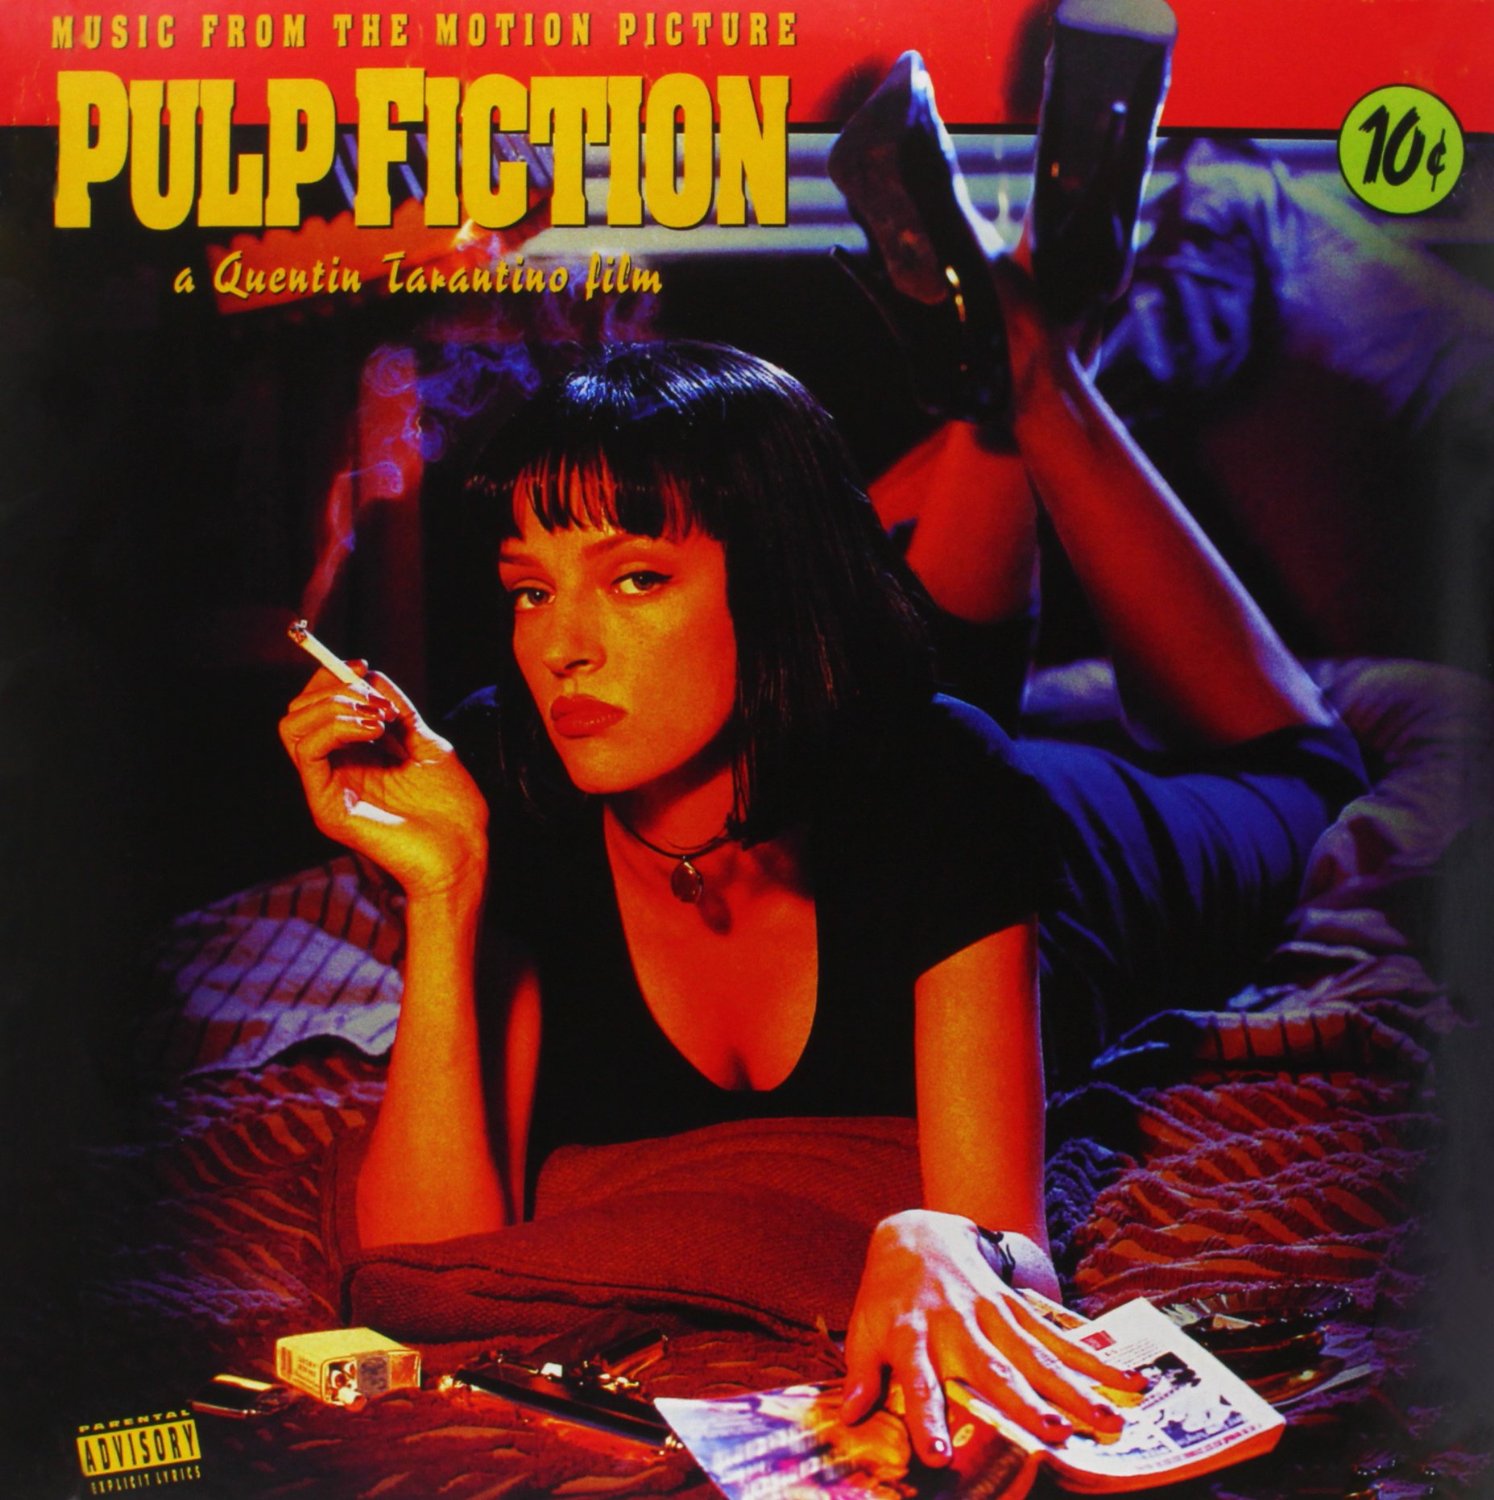 Vinile Pulp Fiction: Music From The Motion Picture NUOVO SIGILLATO, EDIZIONE DEL 08/06/2010 SUBITO DISPONIBILE